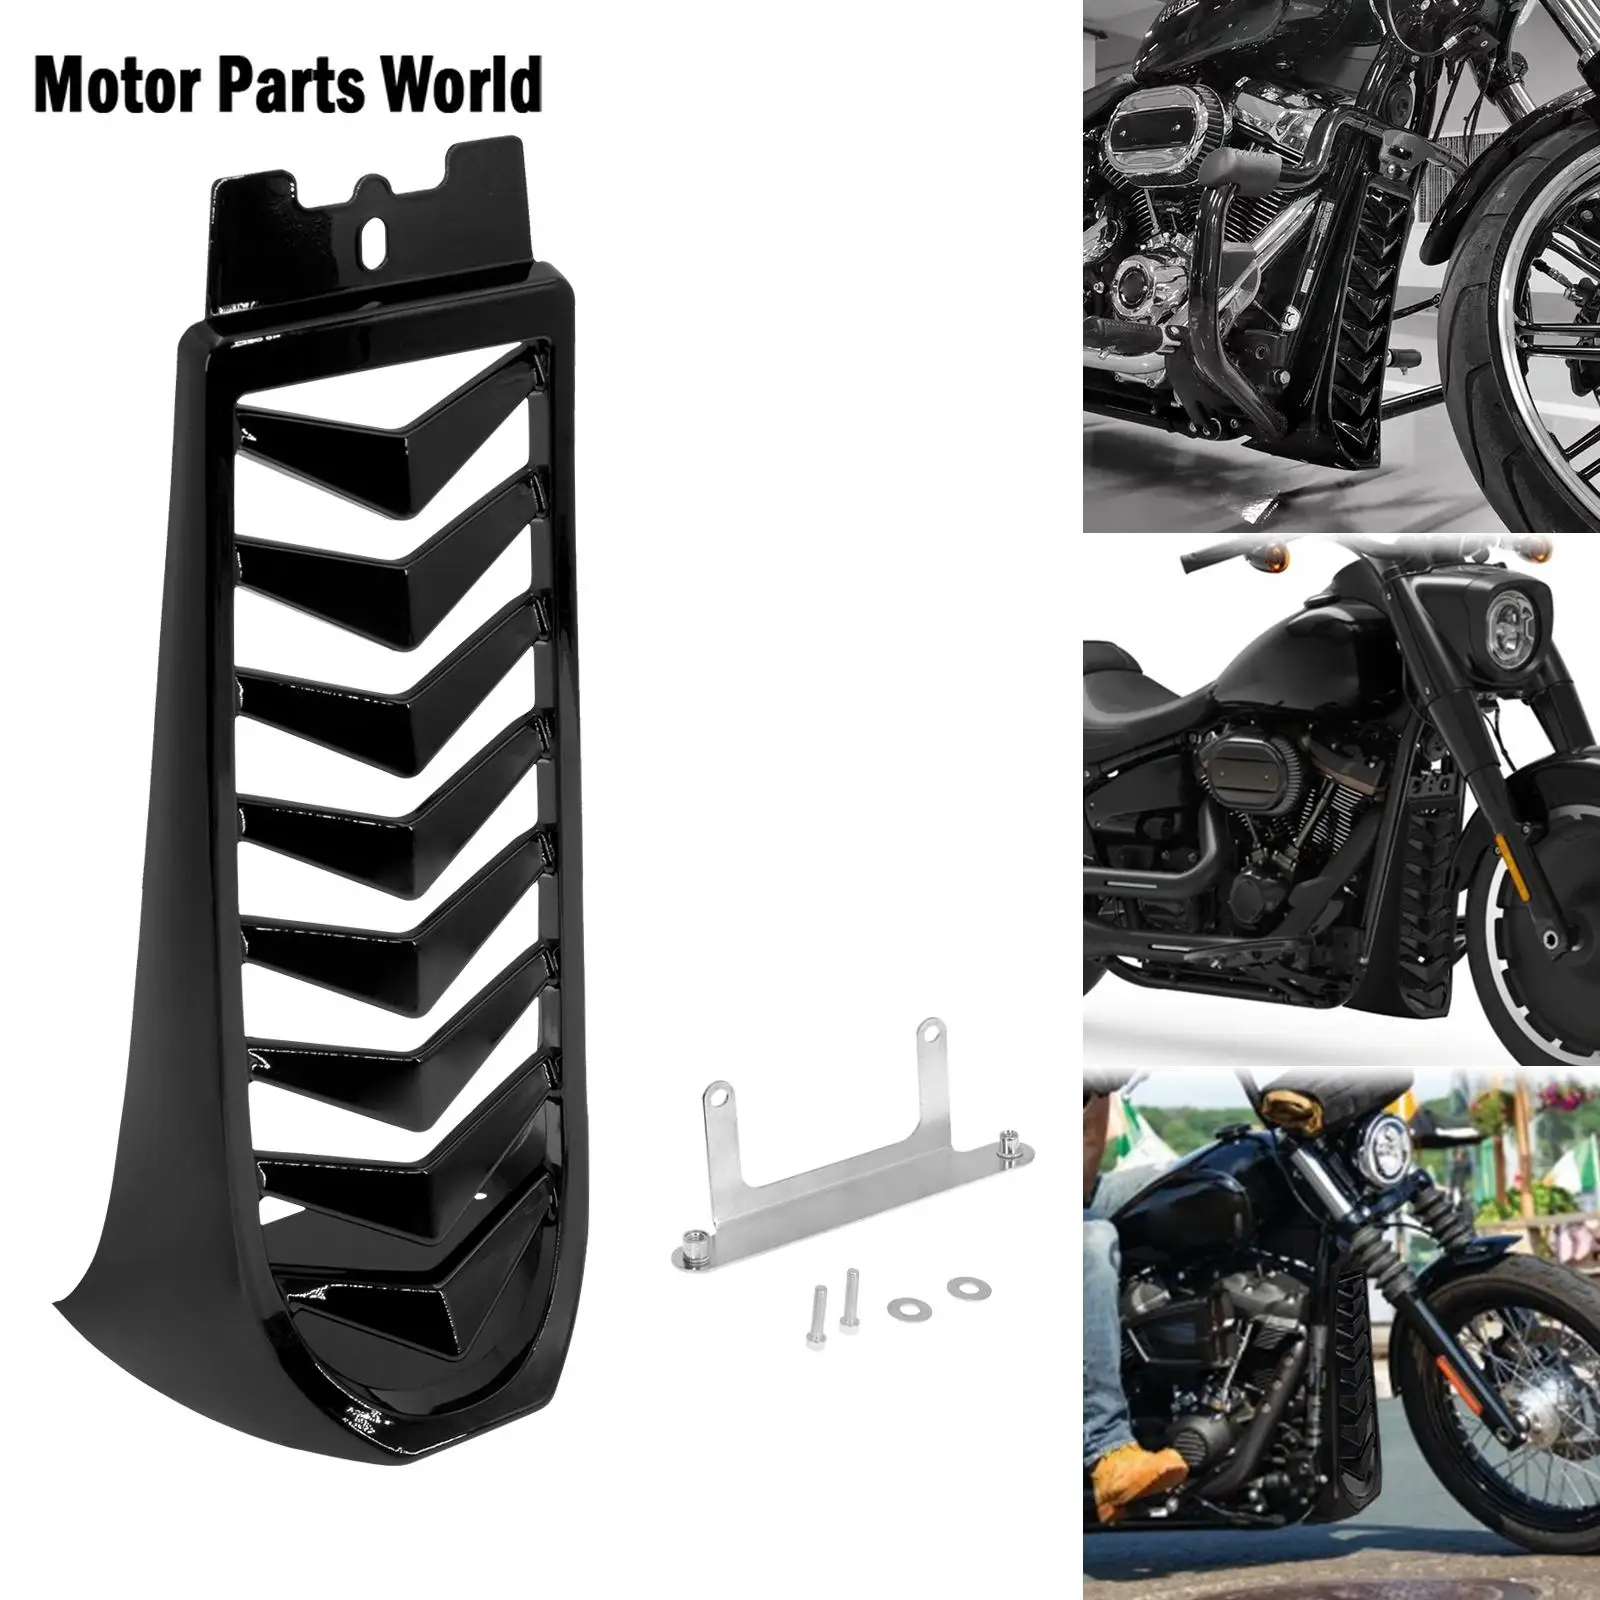 

Черная передняя нижняя крышка радиатора для мотоцикла, обтекатель для подбородка, спойлер для Harley Softail Street Bob break FXBRS 2018 2019 2020